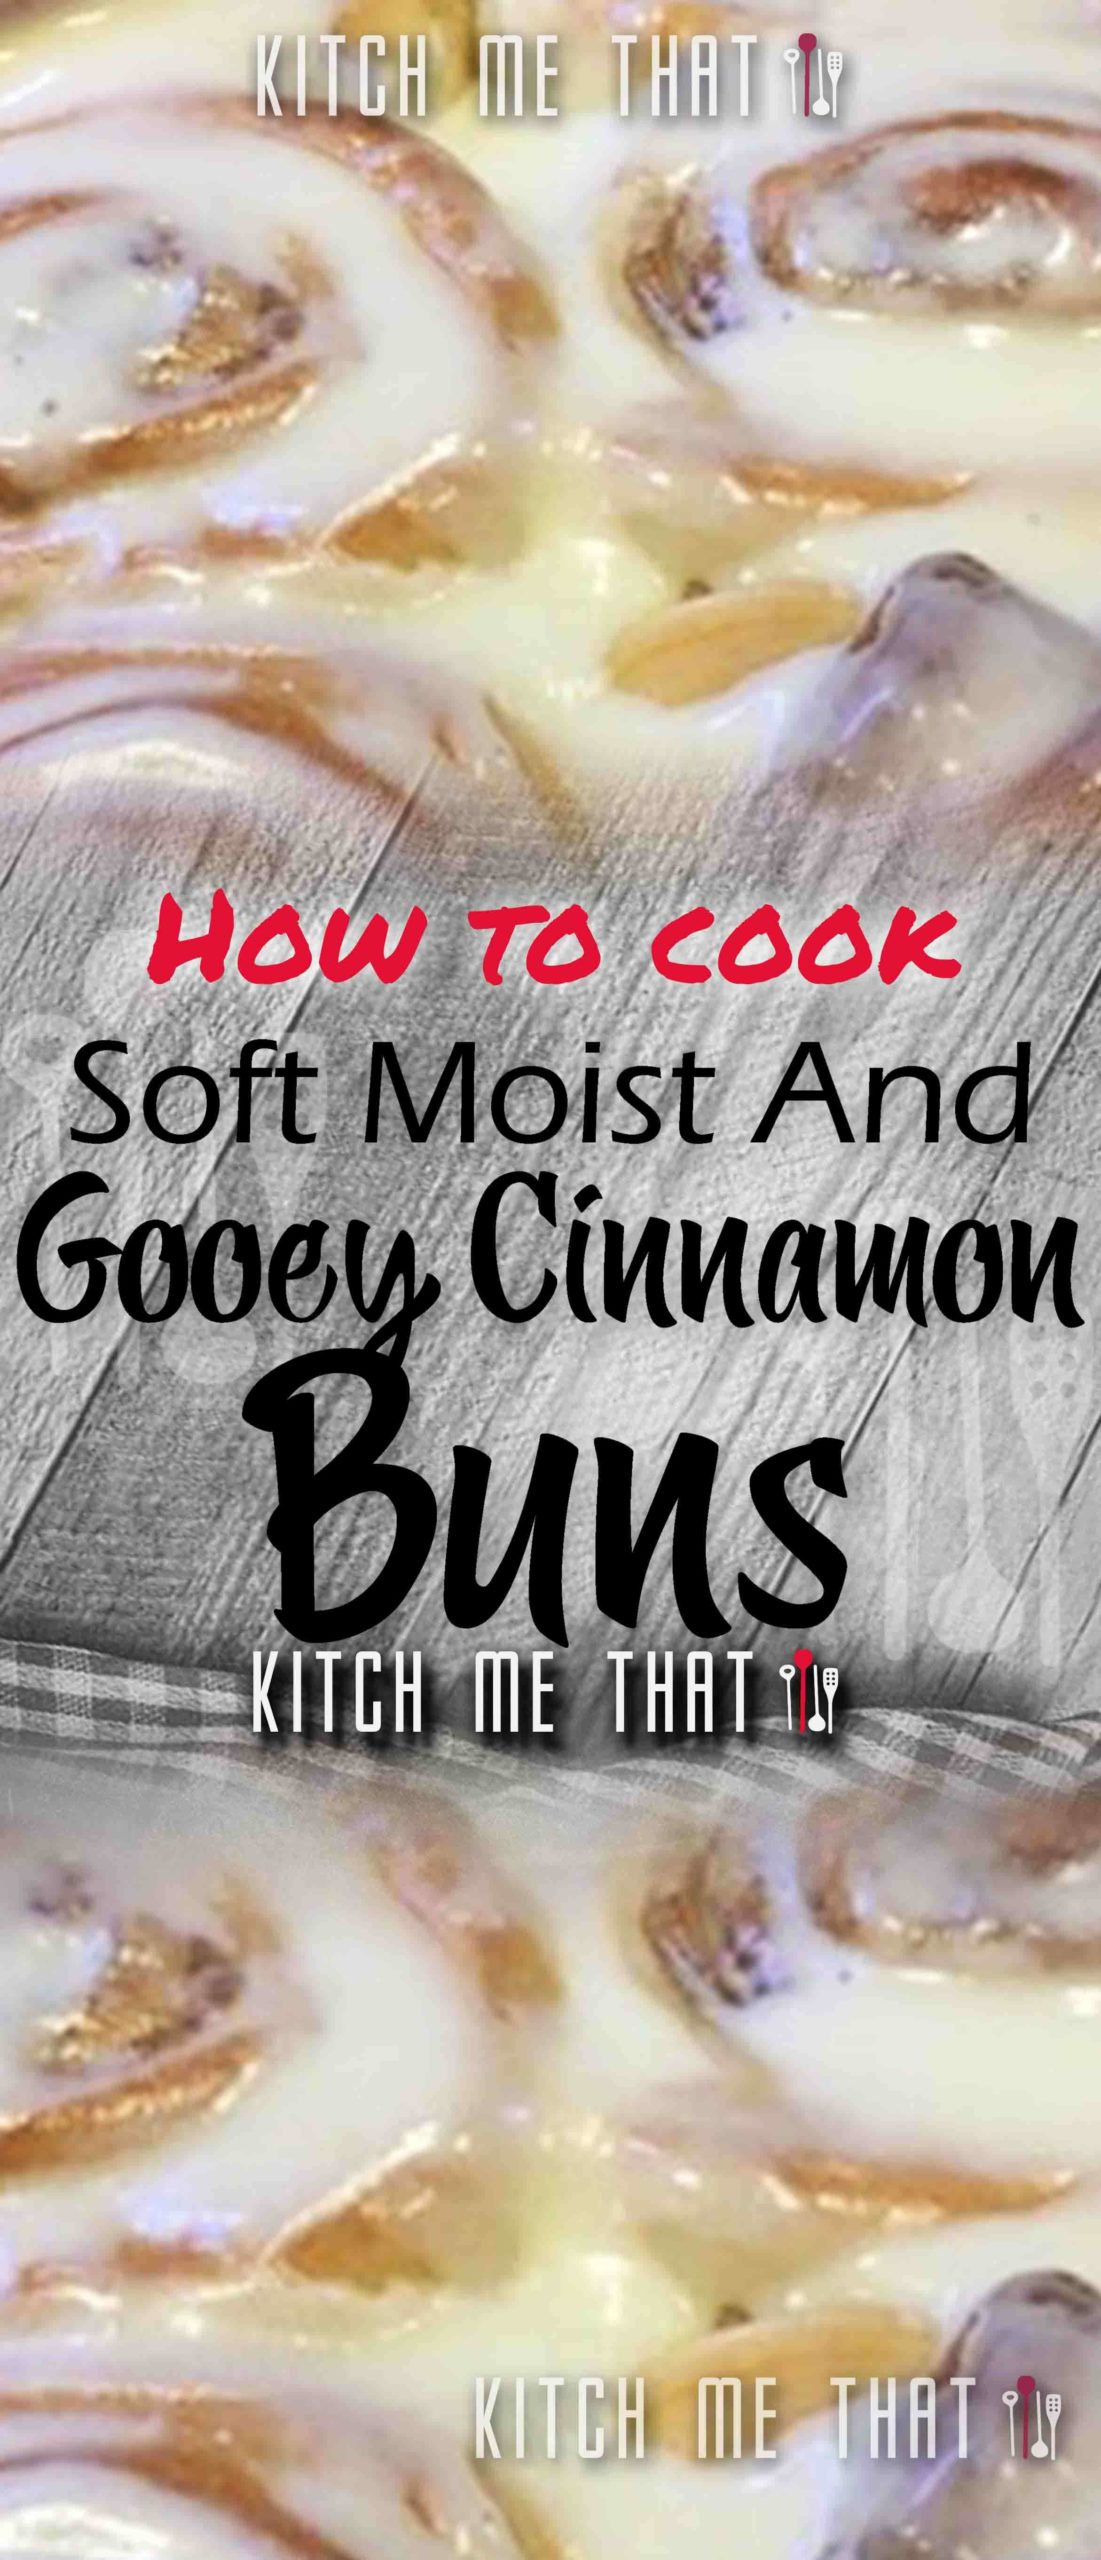 Soft, Moist And Gooey Cinnamon Buns